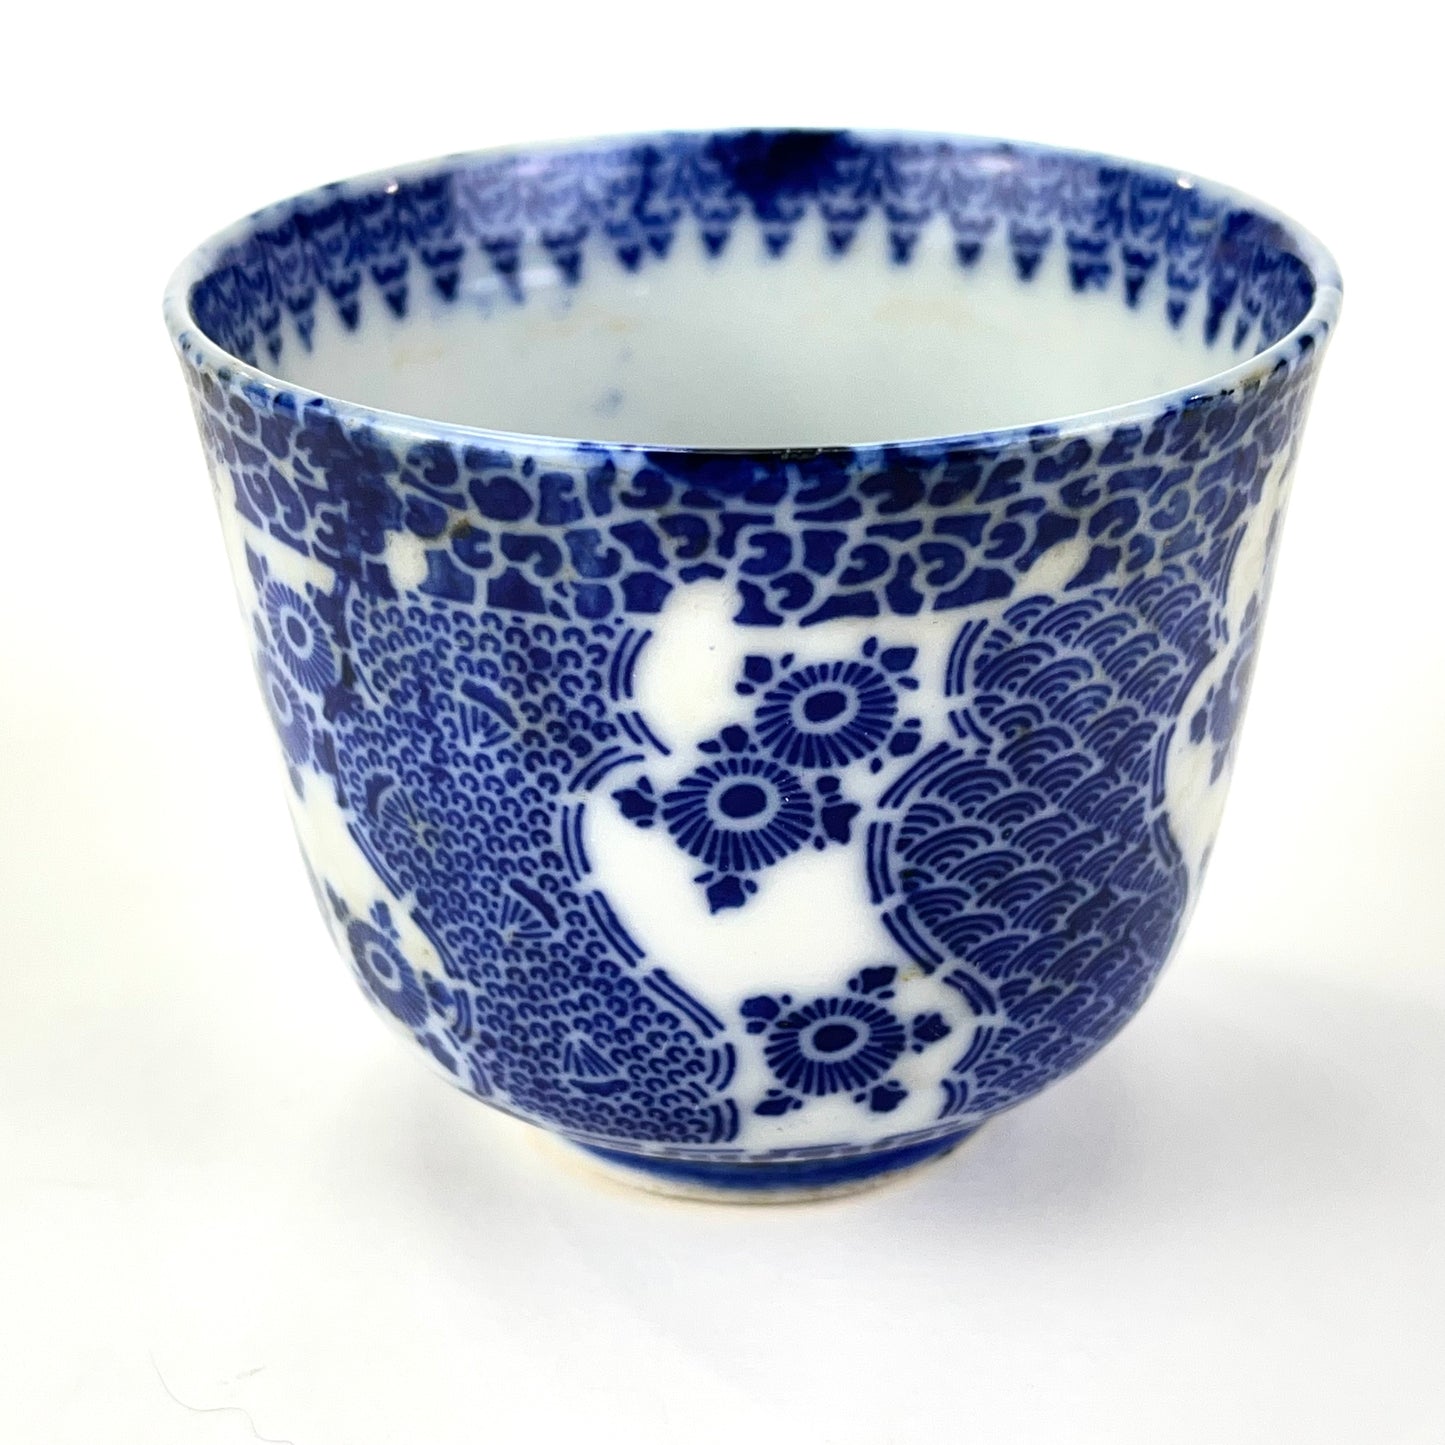 Antique Japanese Meij Era c1910 stenciled Imari Sobachoko Ceramic